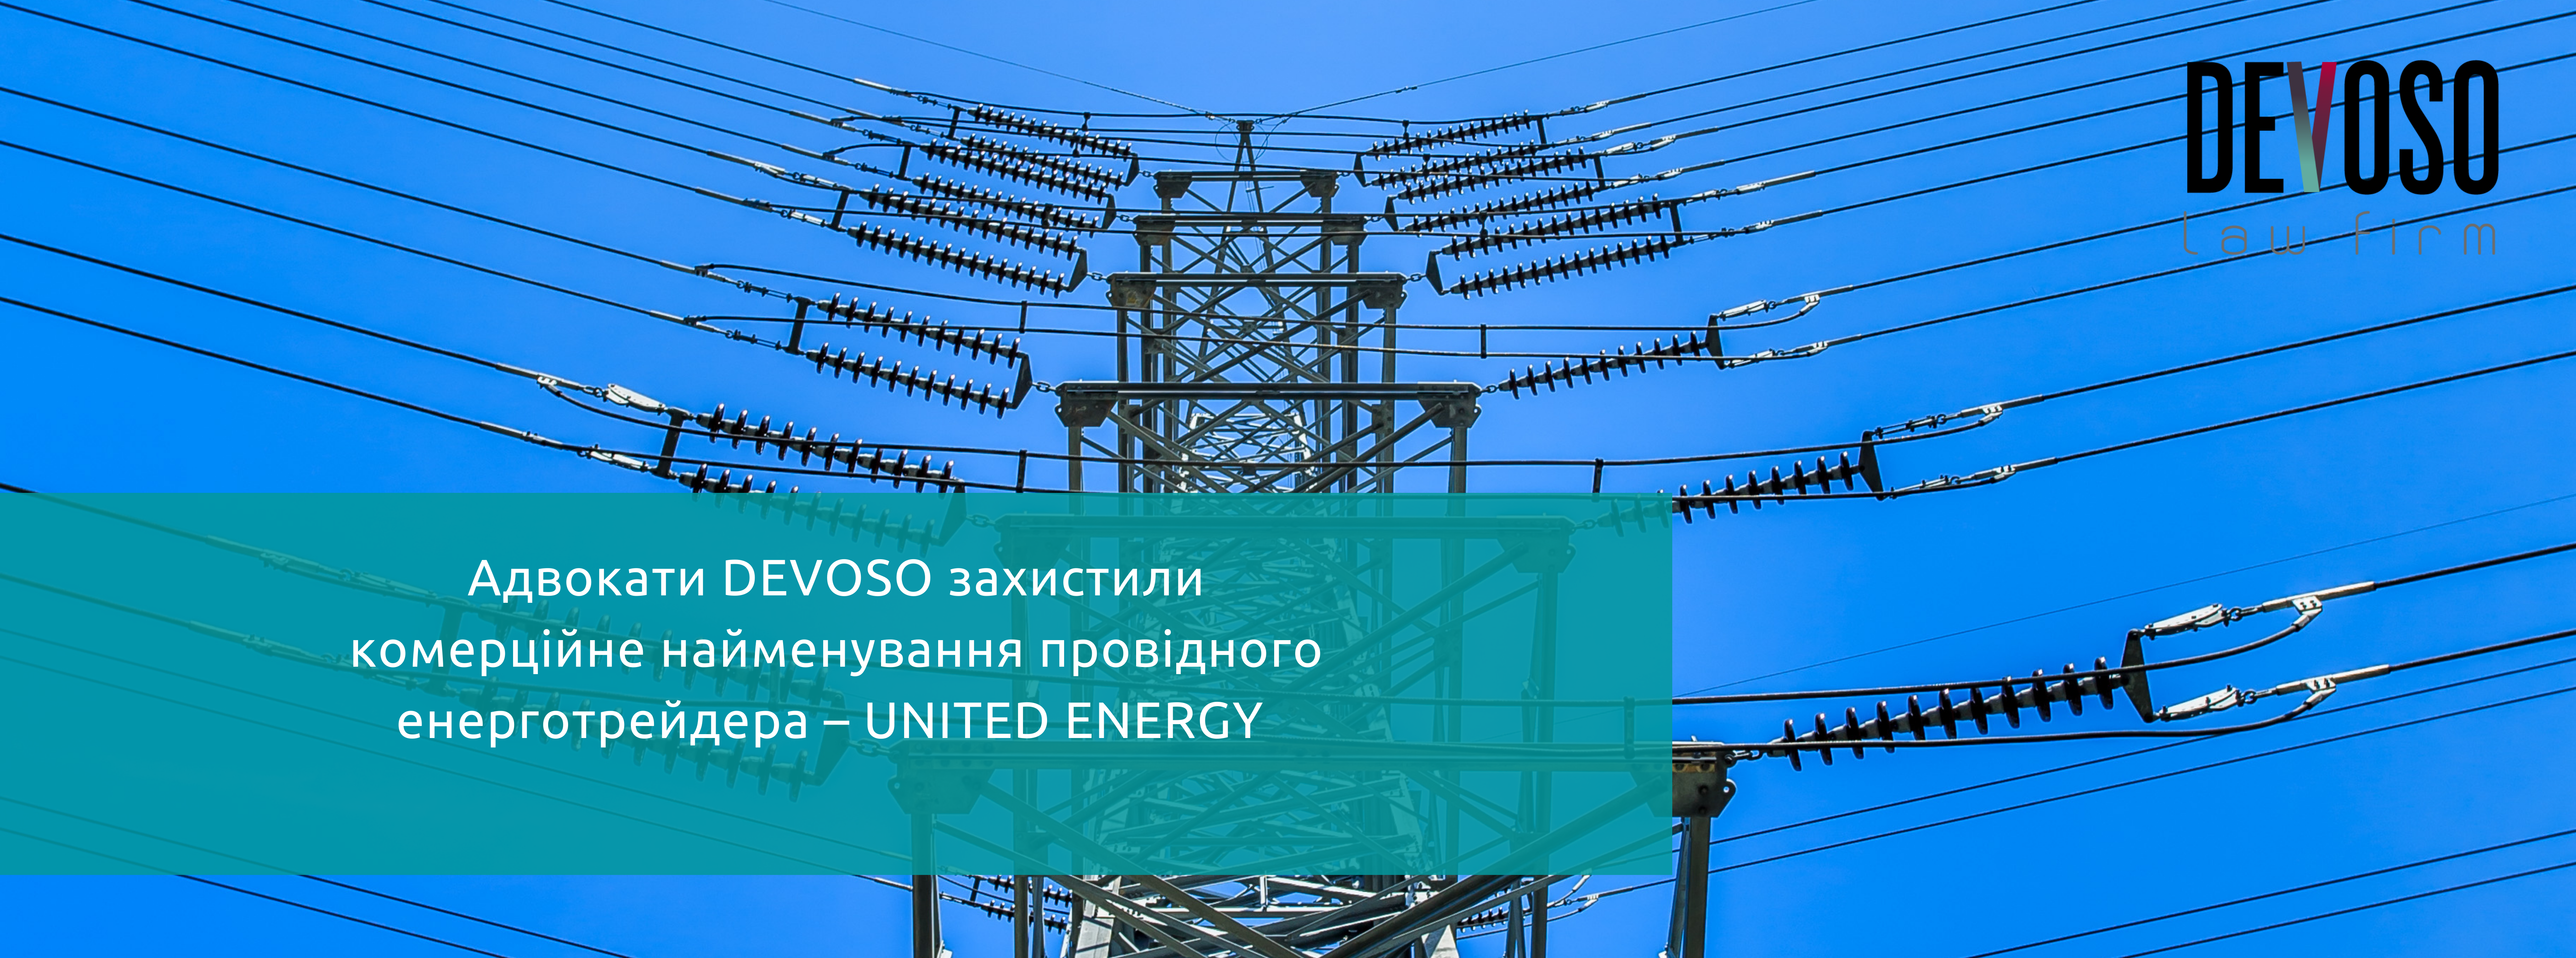 Адвокати Devoso захистили комерційне найменування провідного енерготрейдера – UNITED ENERGY